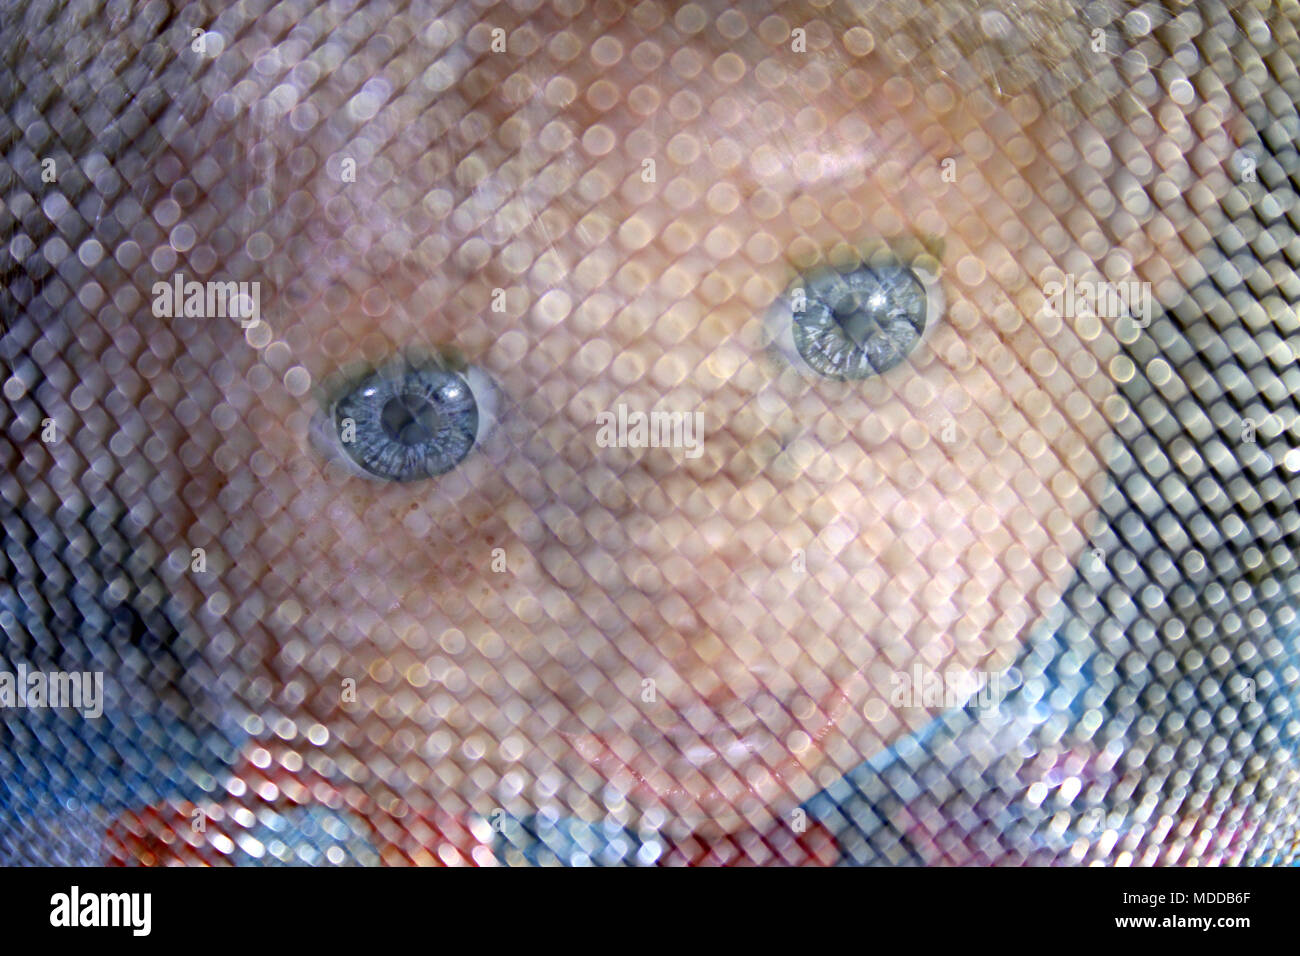 Creepy baby doll face Stock Photo